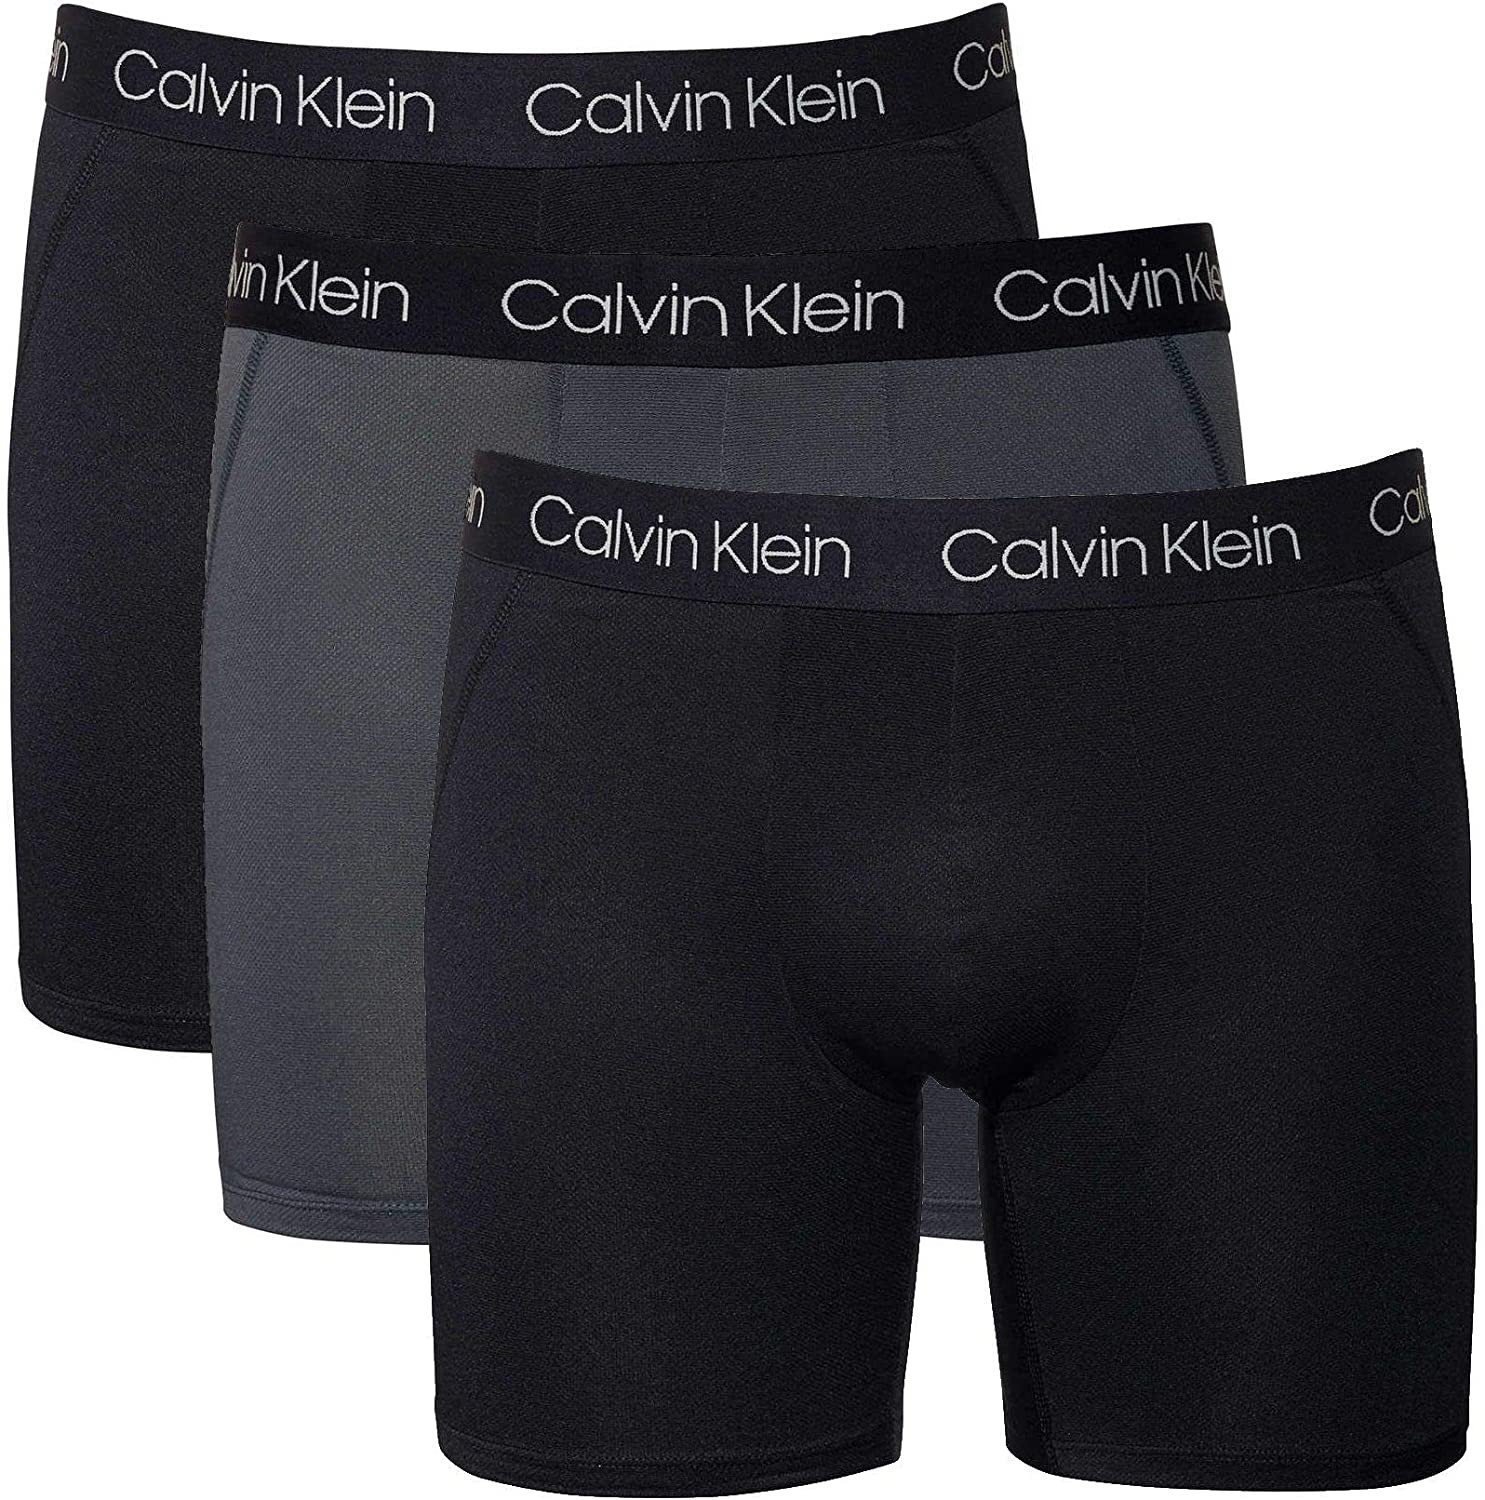 Calvin Klein boxershorts – Bra passform för att må bra